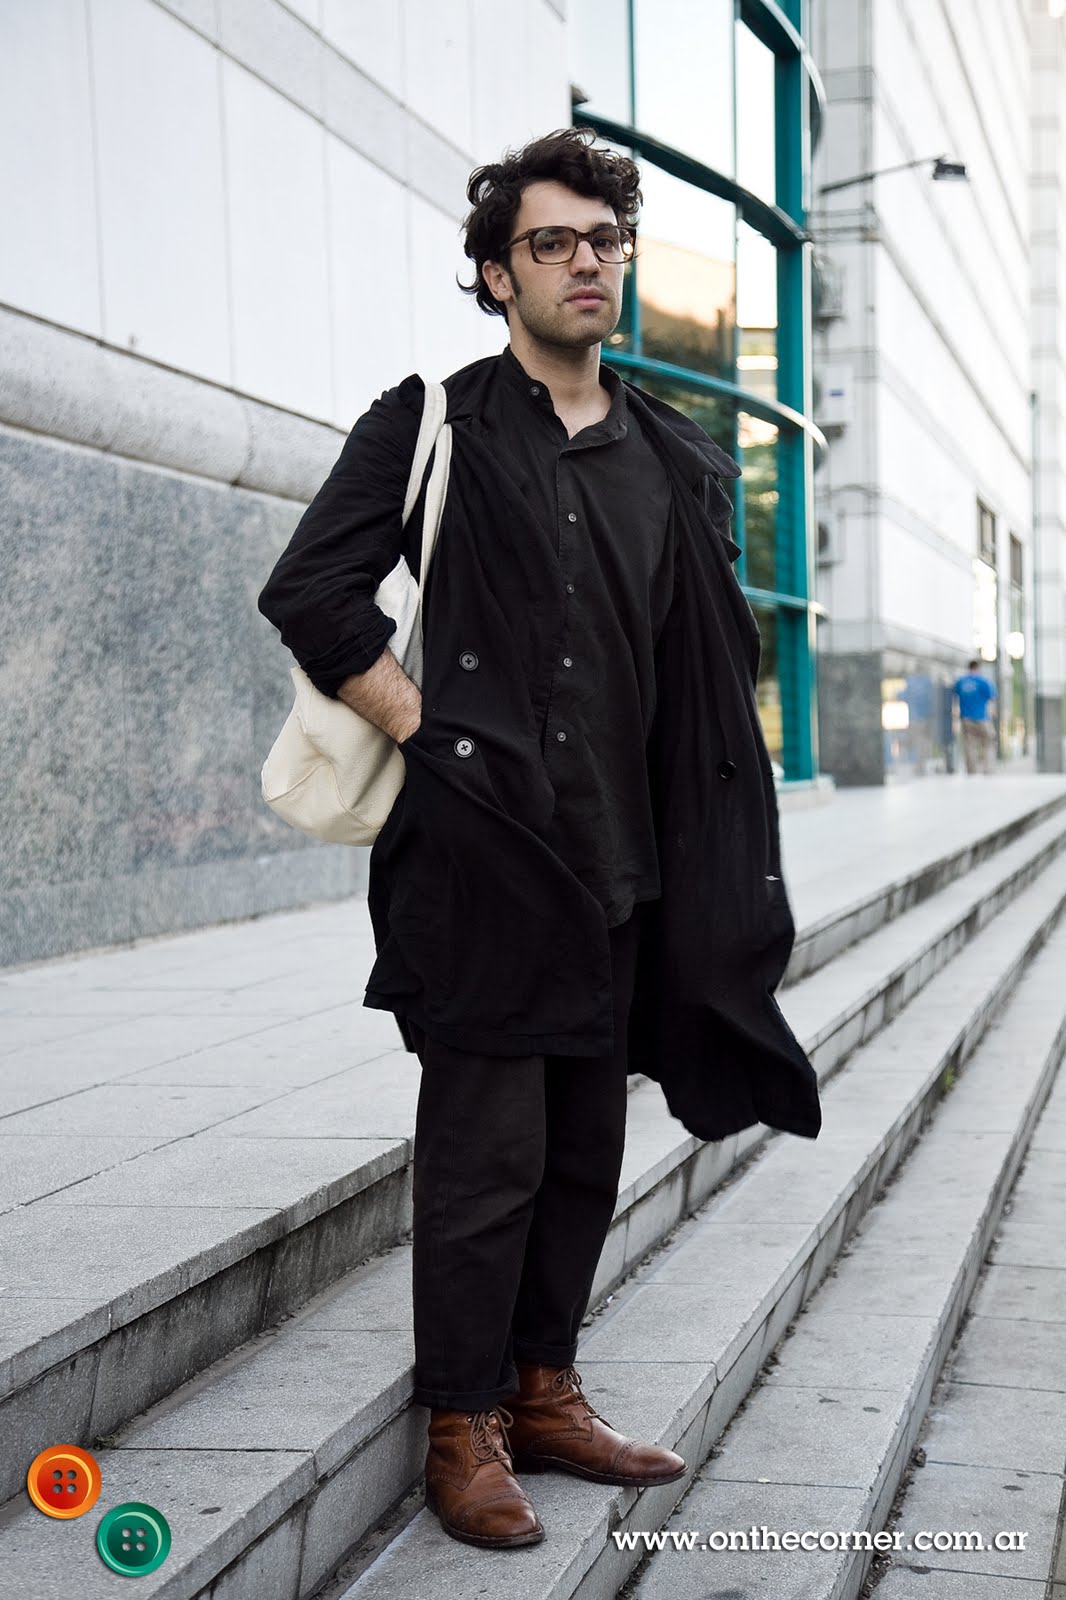 Pablo, 27 años, Diseñador textil.